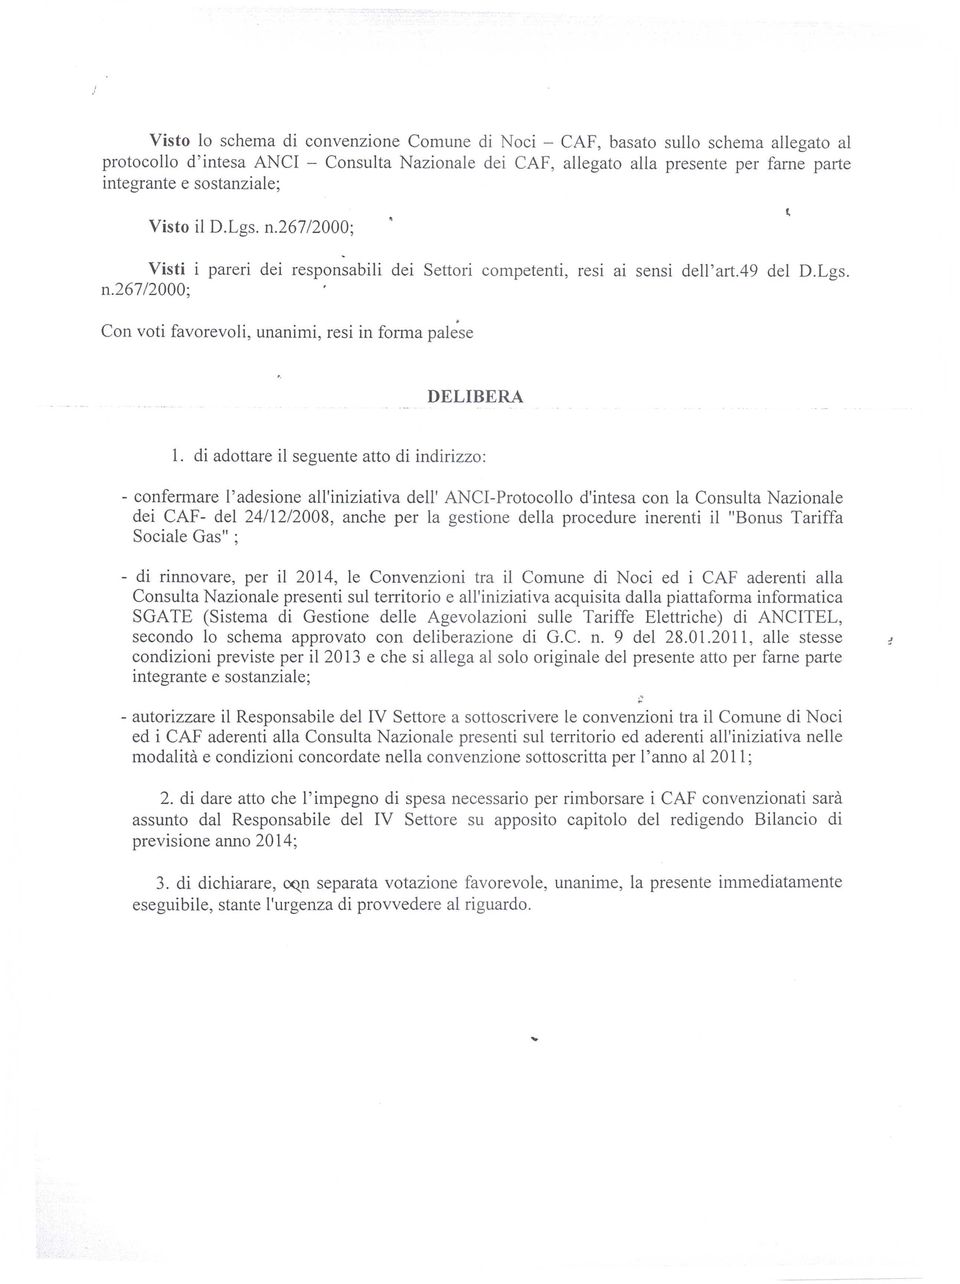 di adottare il seguente atto di indirizzo: - confermare l'adesione all'iniziativa dell' ANCI-Protocollo d'intesa con la Consulta Nazionale dei CAF- del 24/12/2008, anche per la gestione della